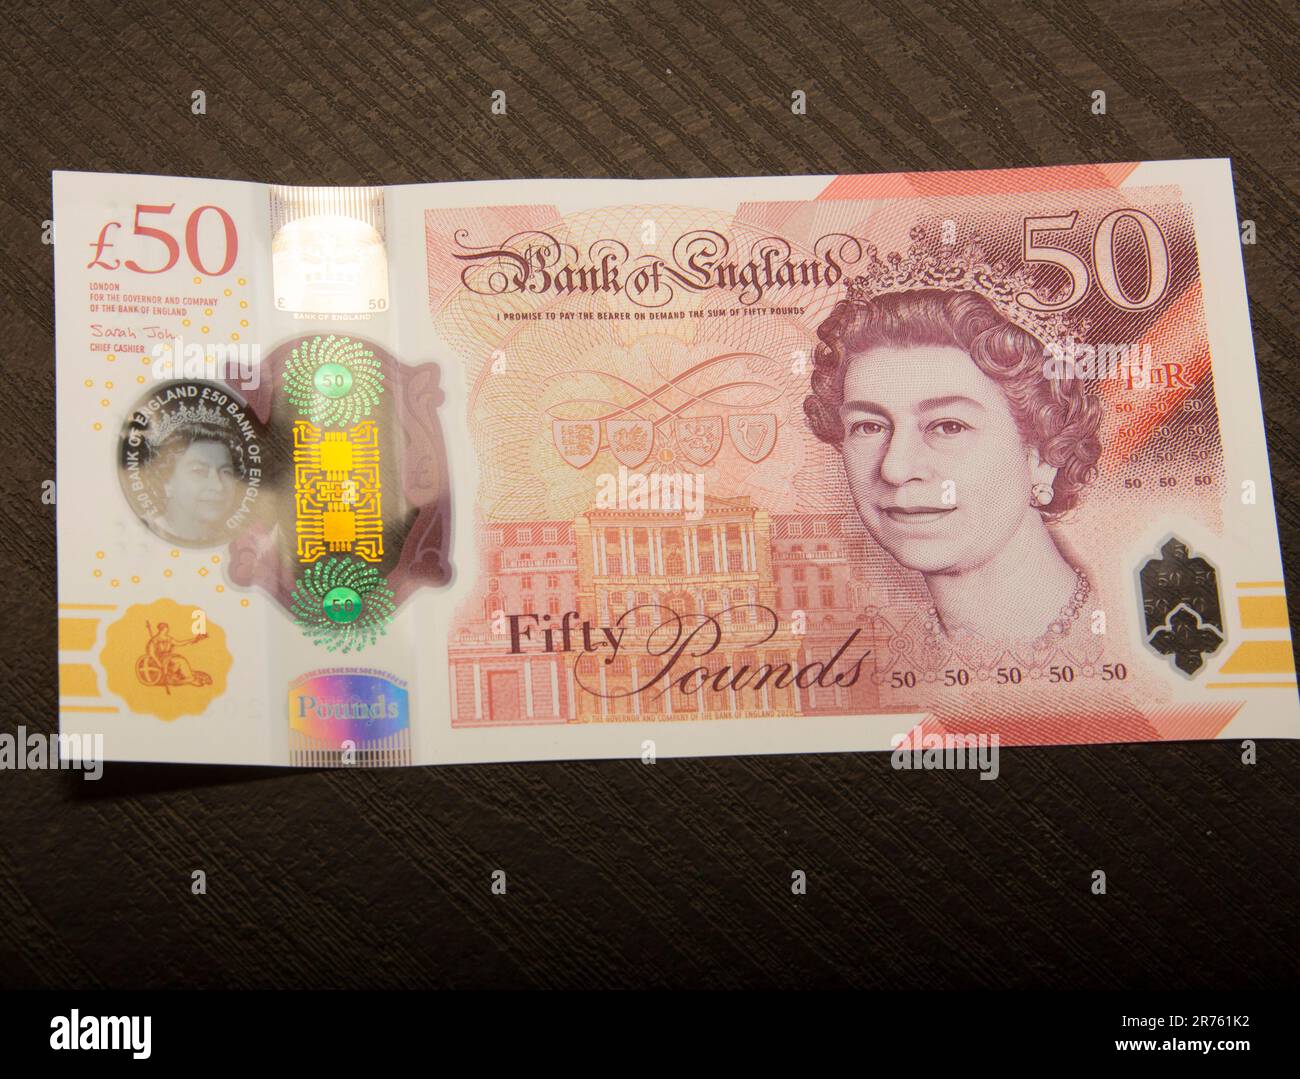 Billetes de banco de la libra esterlina británica. Dinero £50 libras en efectivo billetes del Reino Unido, Sterling,50 Foto de stock